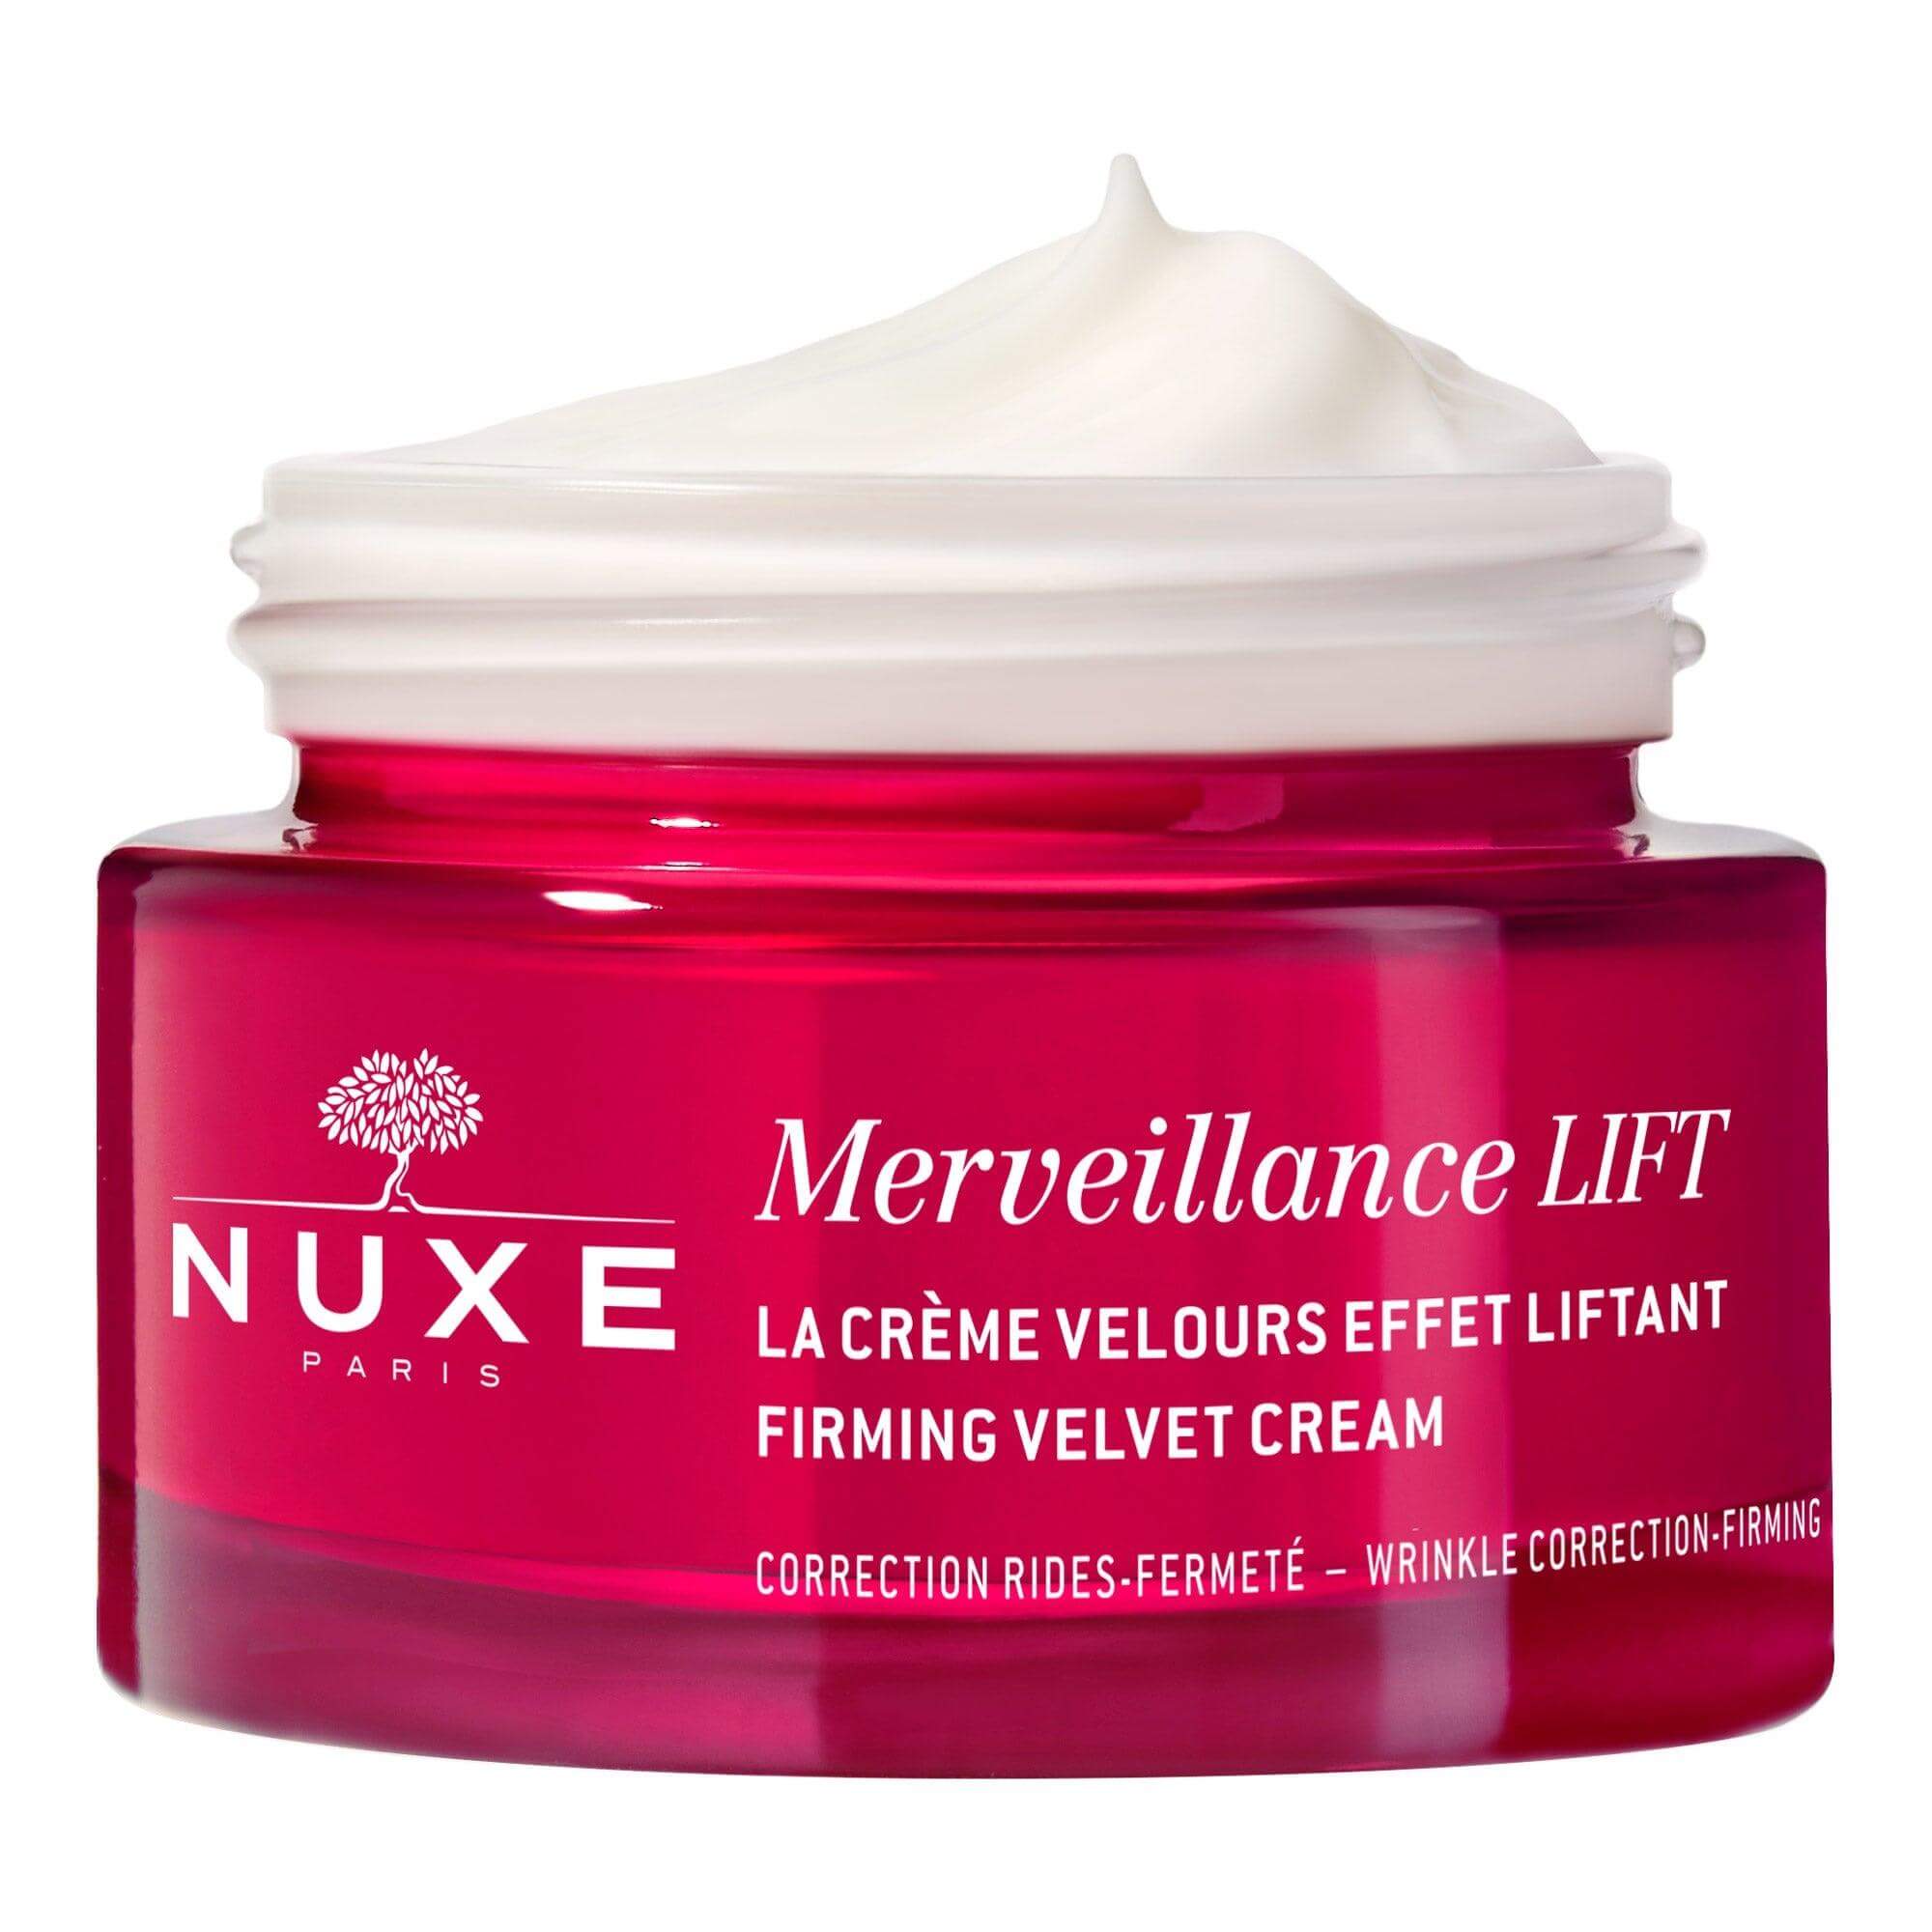 Nuxe Merveillance Lift Firming Velvet Cream 50 ml - Farmareyon